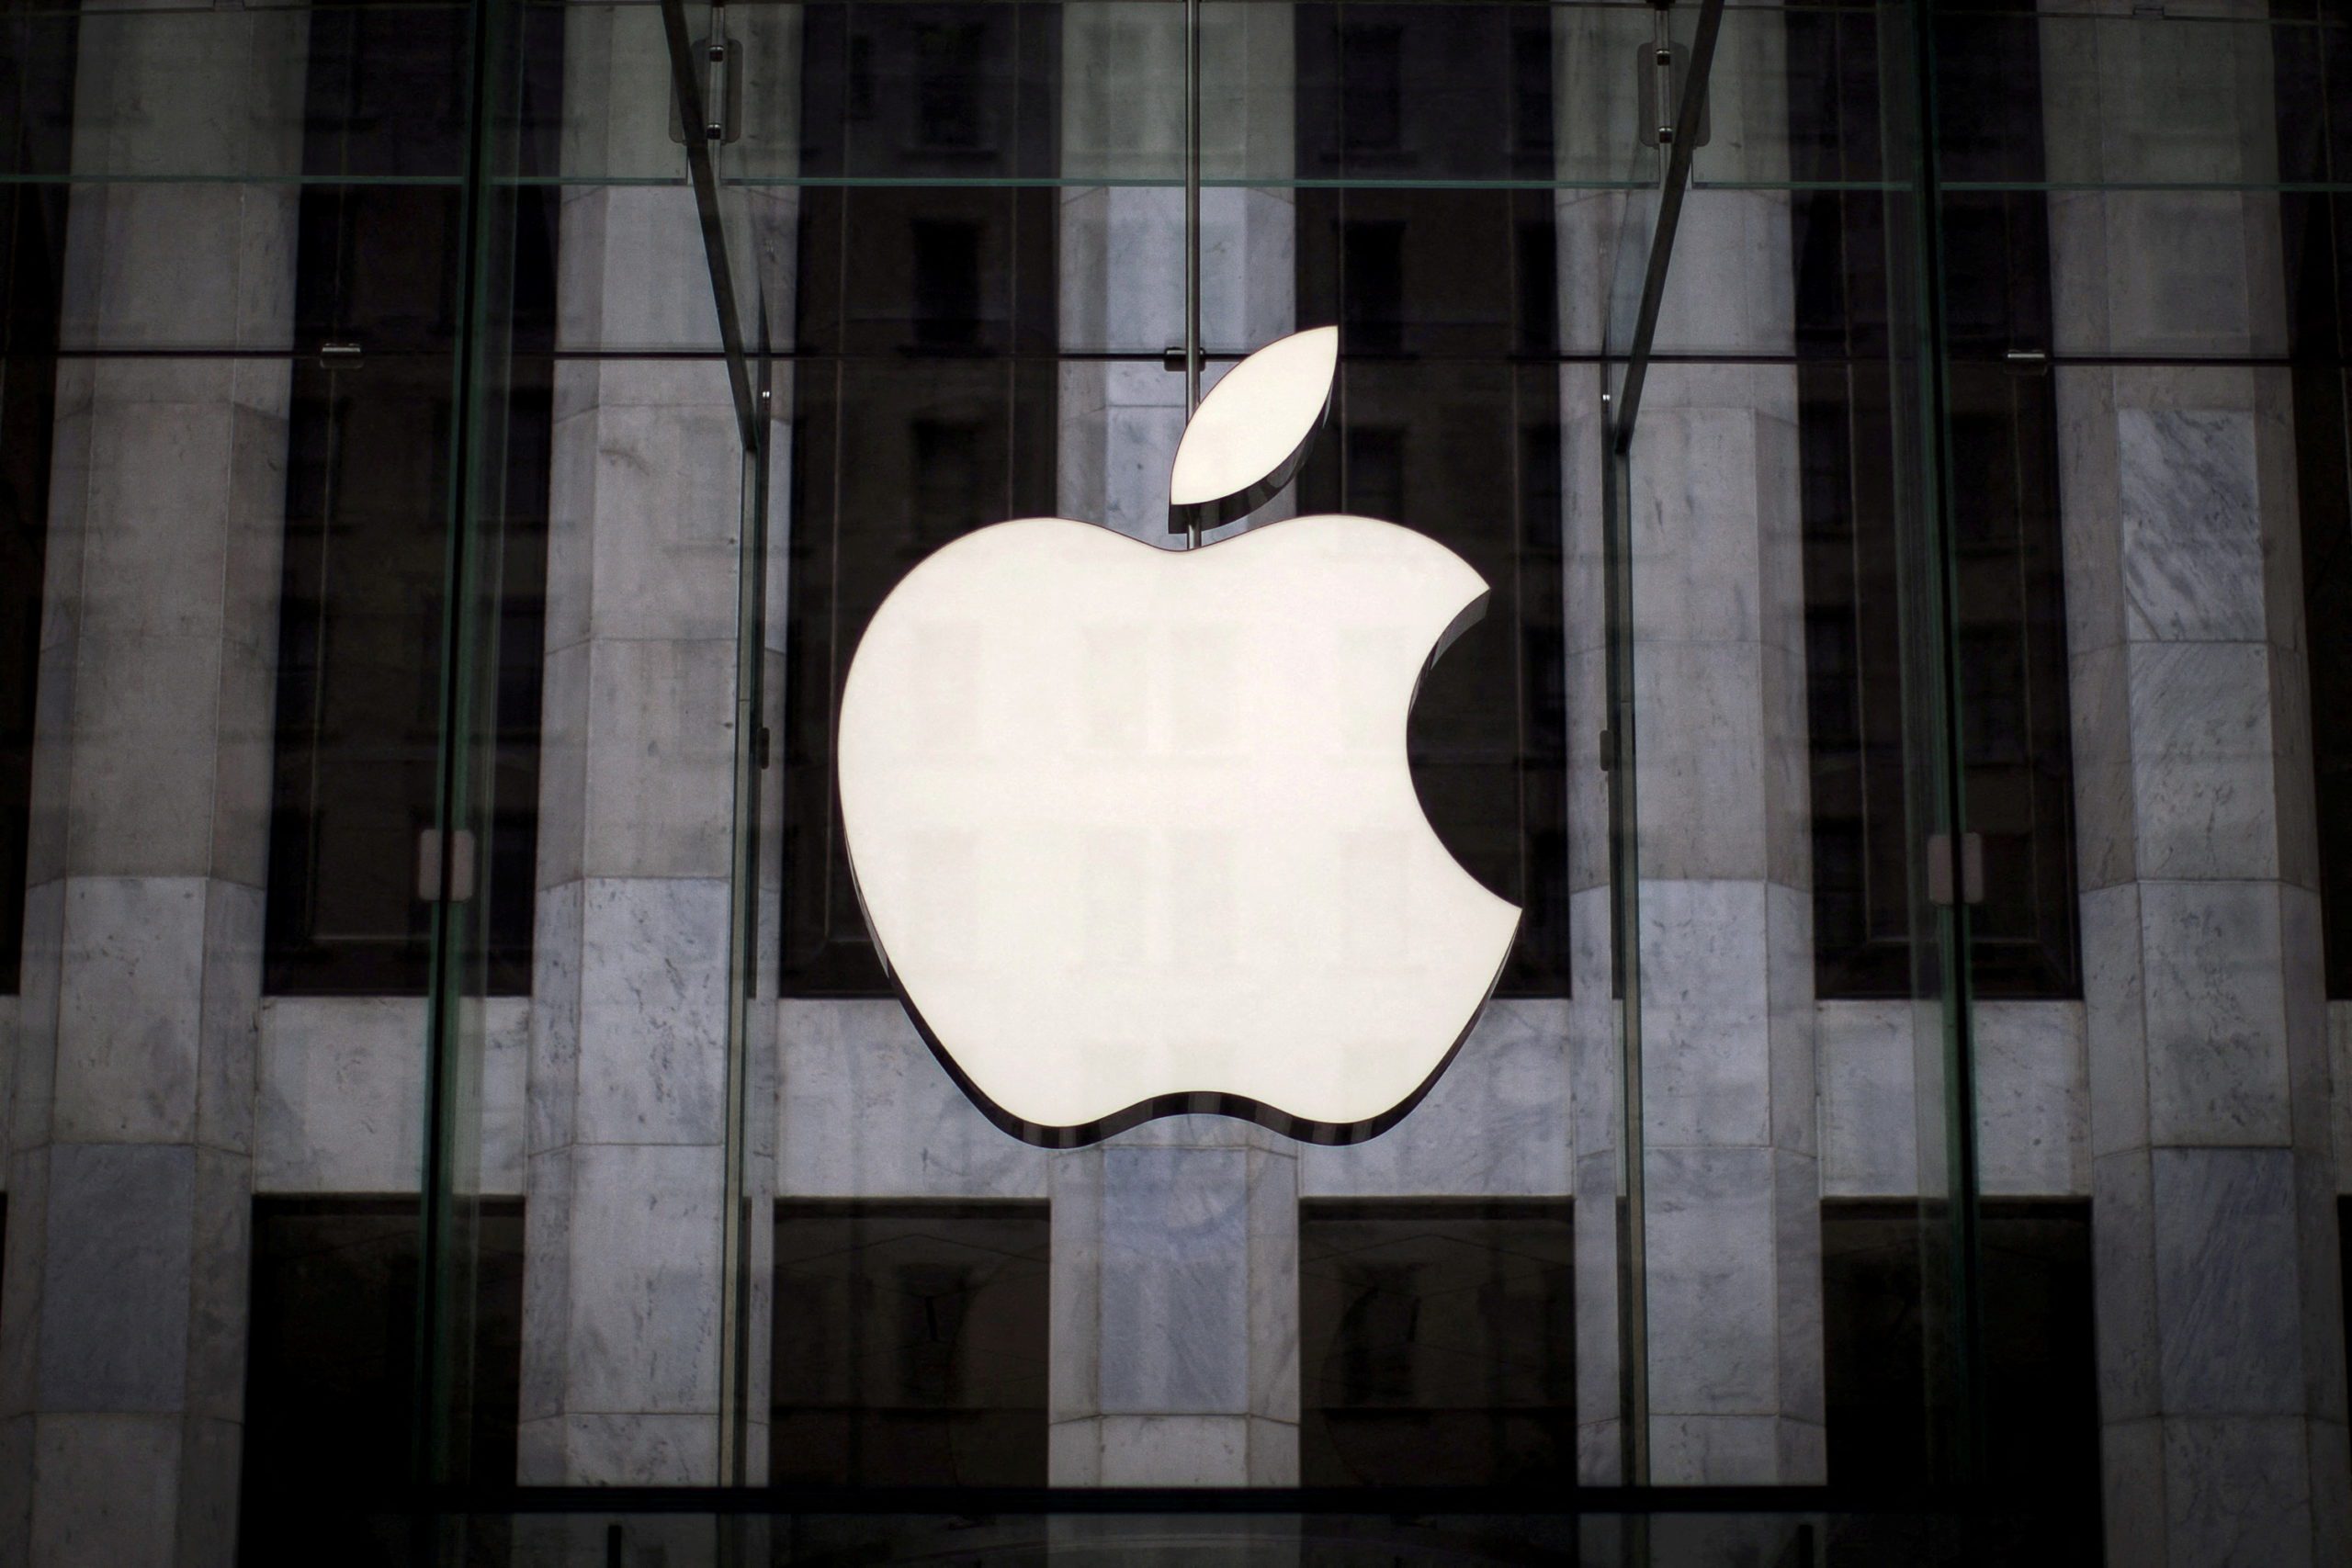 Apple enfrenta nova acusação da UE em investigação de streaming de música, diz fonte
21/07/2015
REUTERS/Mike Segar